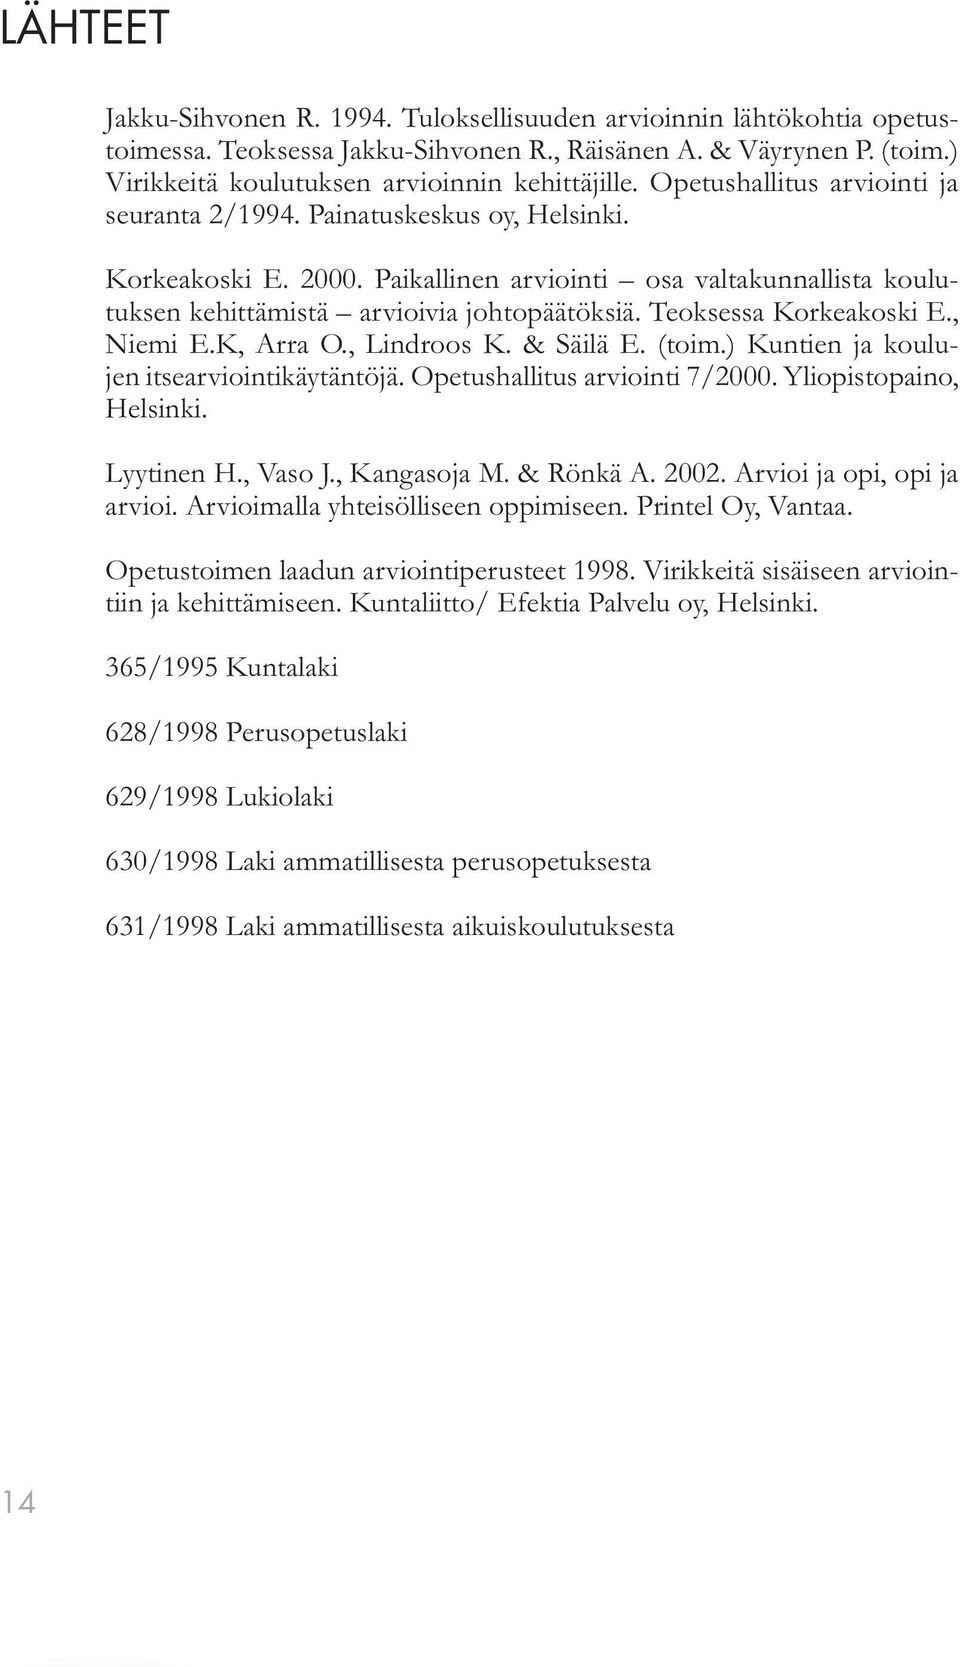 Teoksessa Korkeakoski E., Niemi E.K, Arra O., Lindroos K. & Säilä E. (toim.) Kuntien ja koulujen itsearviointikäytäntöjä. Opetushallitus arviointi 7/2000. Yliopistopaino, Helsinki. Lyytinen H.